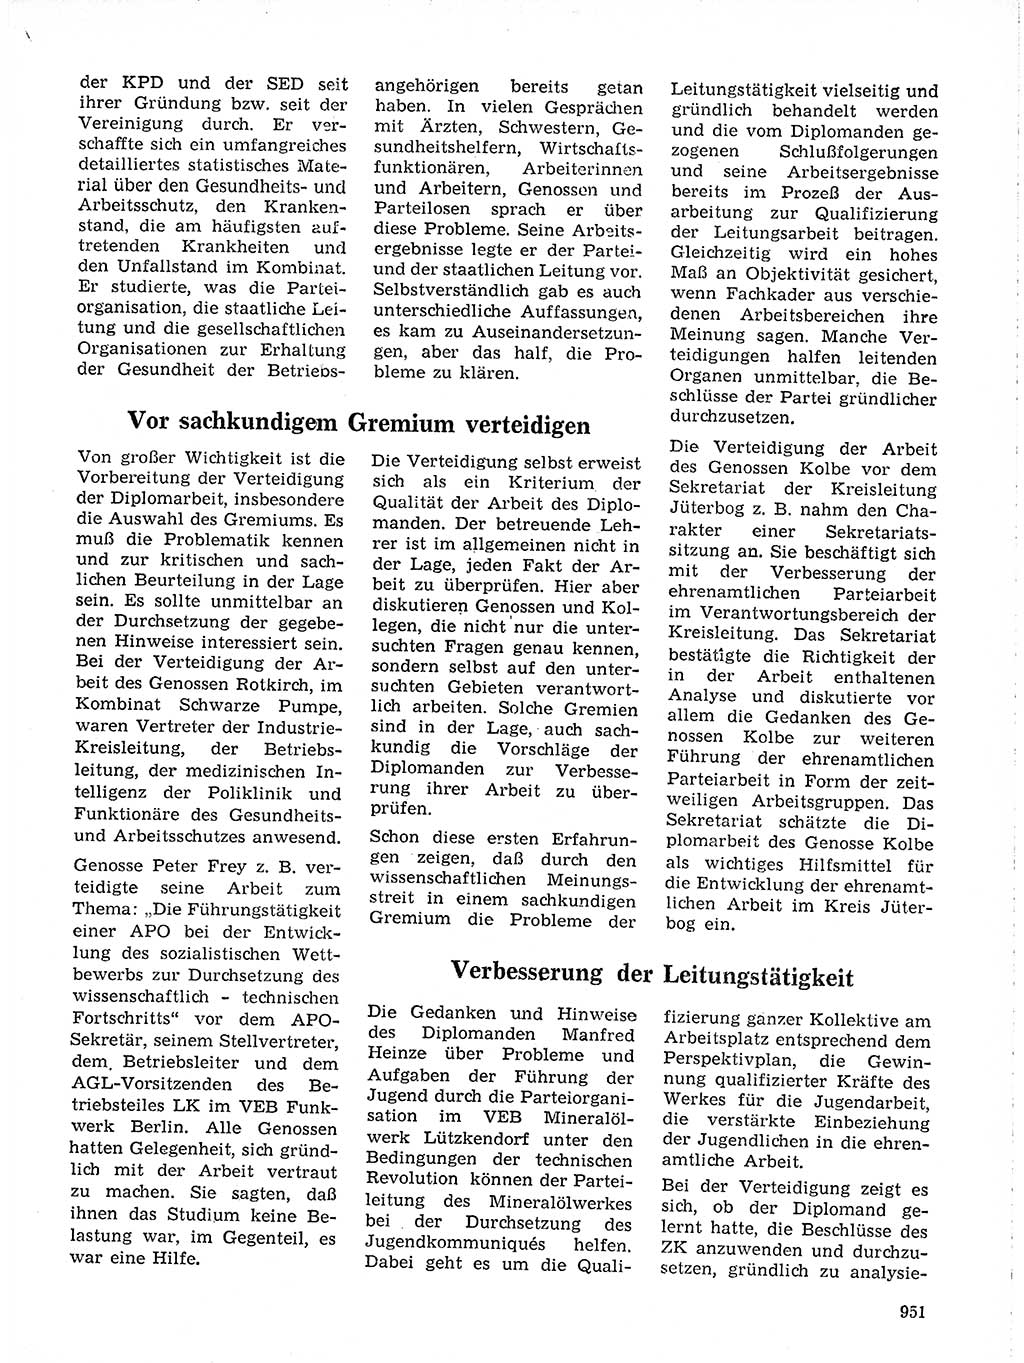 Neuer Weg (NW), Organ des Zentralkomitees (ZK) der SED (Sozialistische Einheitspartei Deutschlands) für Fragen des Parteilebens, 19. Jahrgang [Deutsche Demokratische Republik (DDR)] 1964, Seite 951 (NW ZK SED DDR 1964, S. 951)